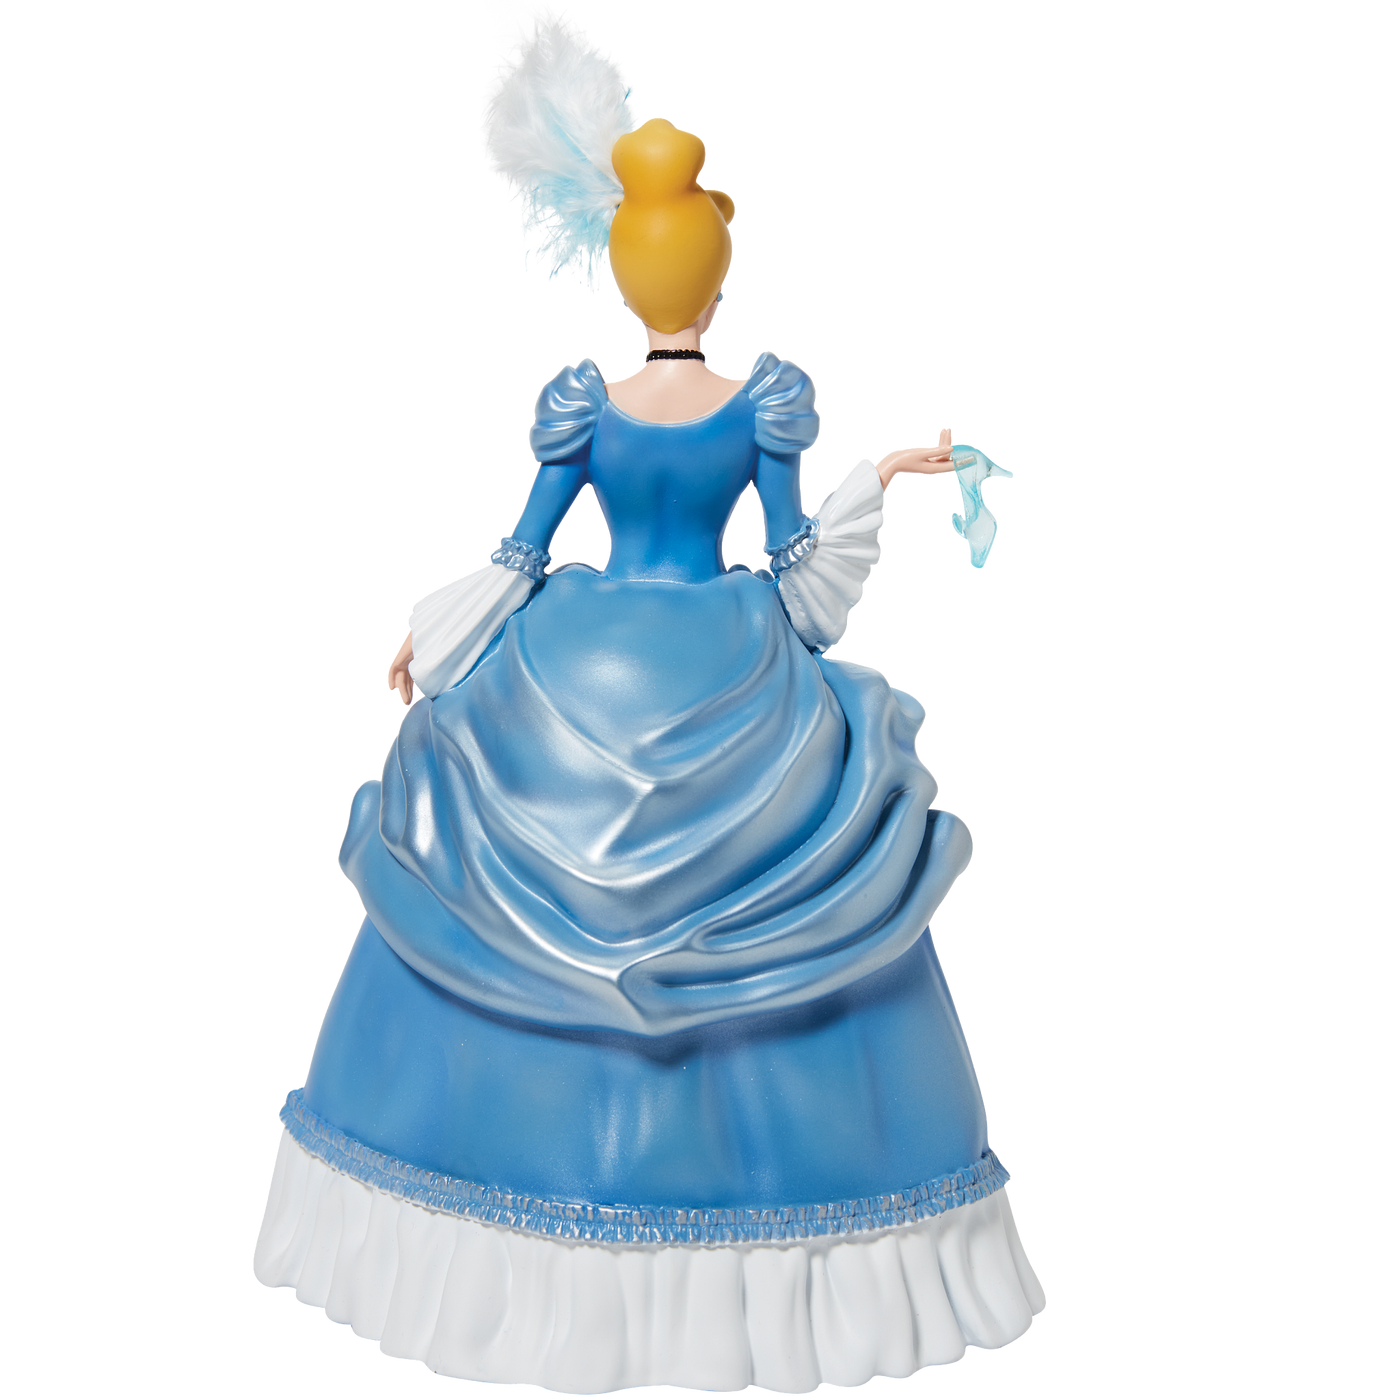 Cinderella & Lady Tremaine by Rococo